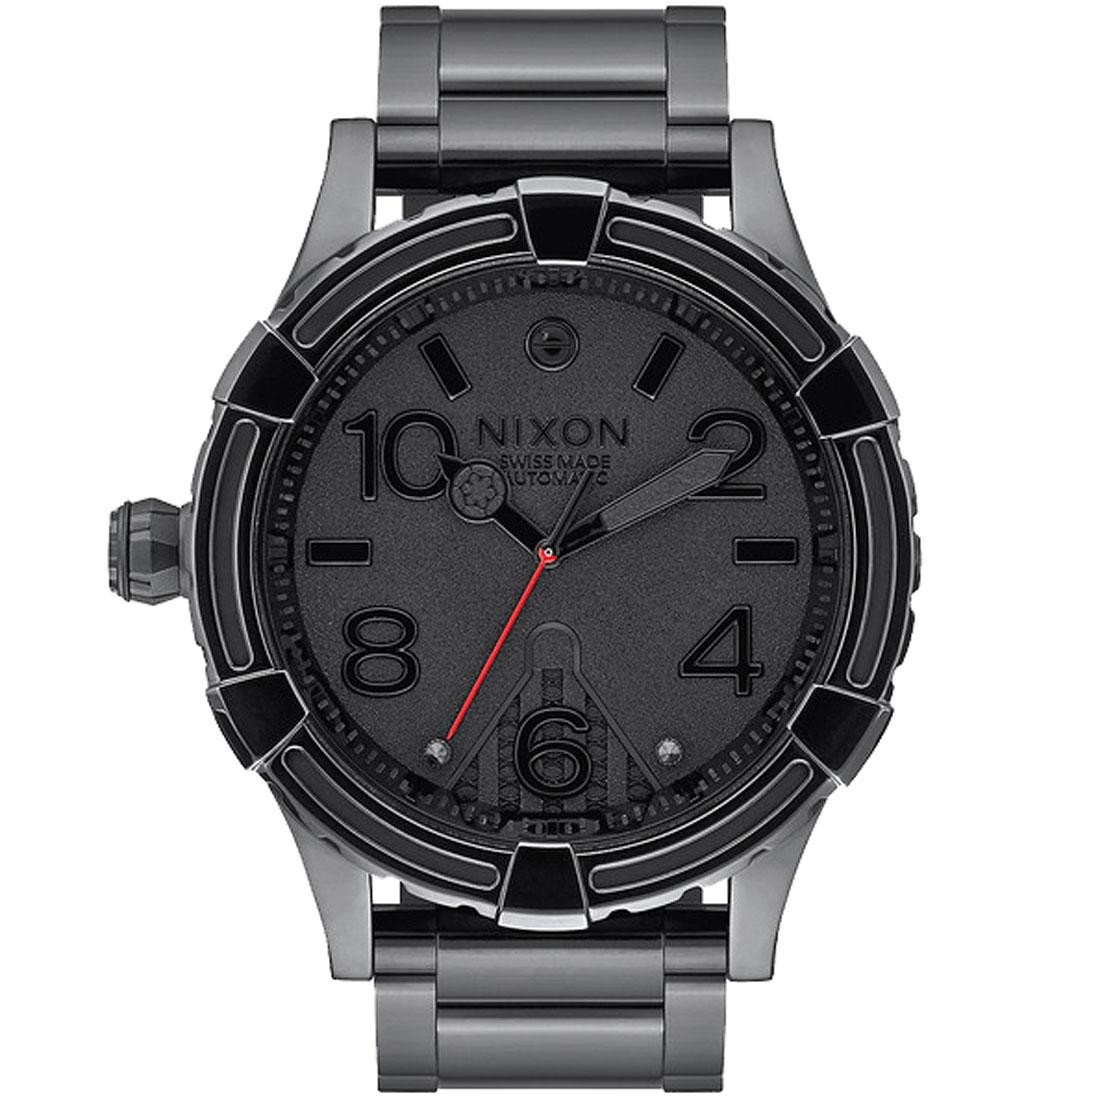 Nixon x Star Wars 51-30 Automatic LTD Watch - Vader Limited Edition (black)